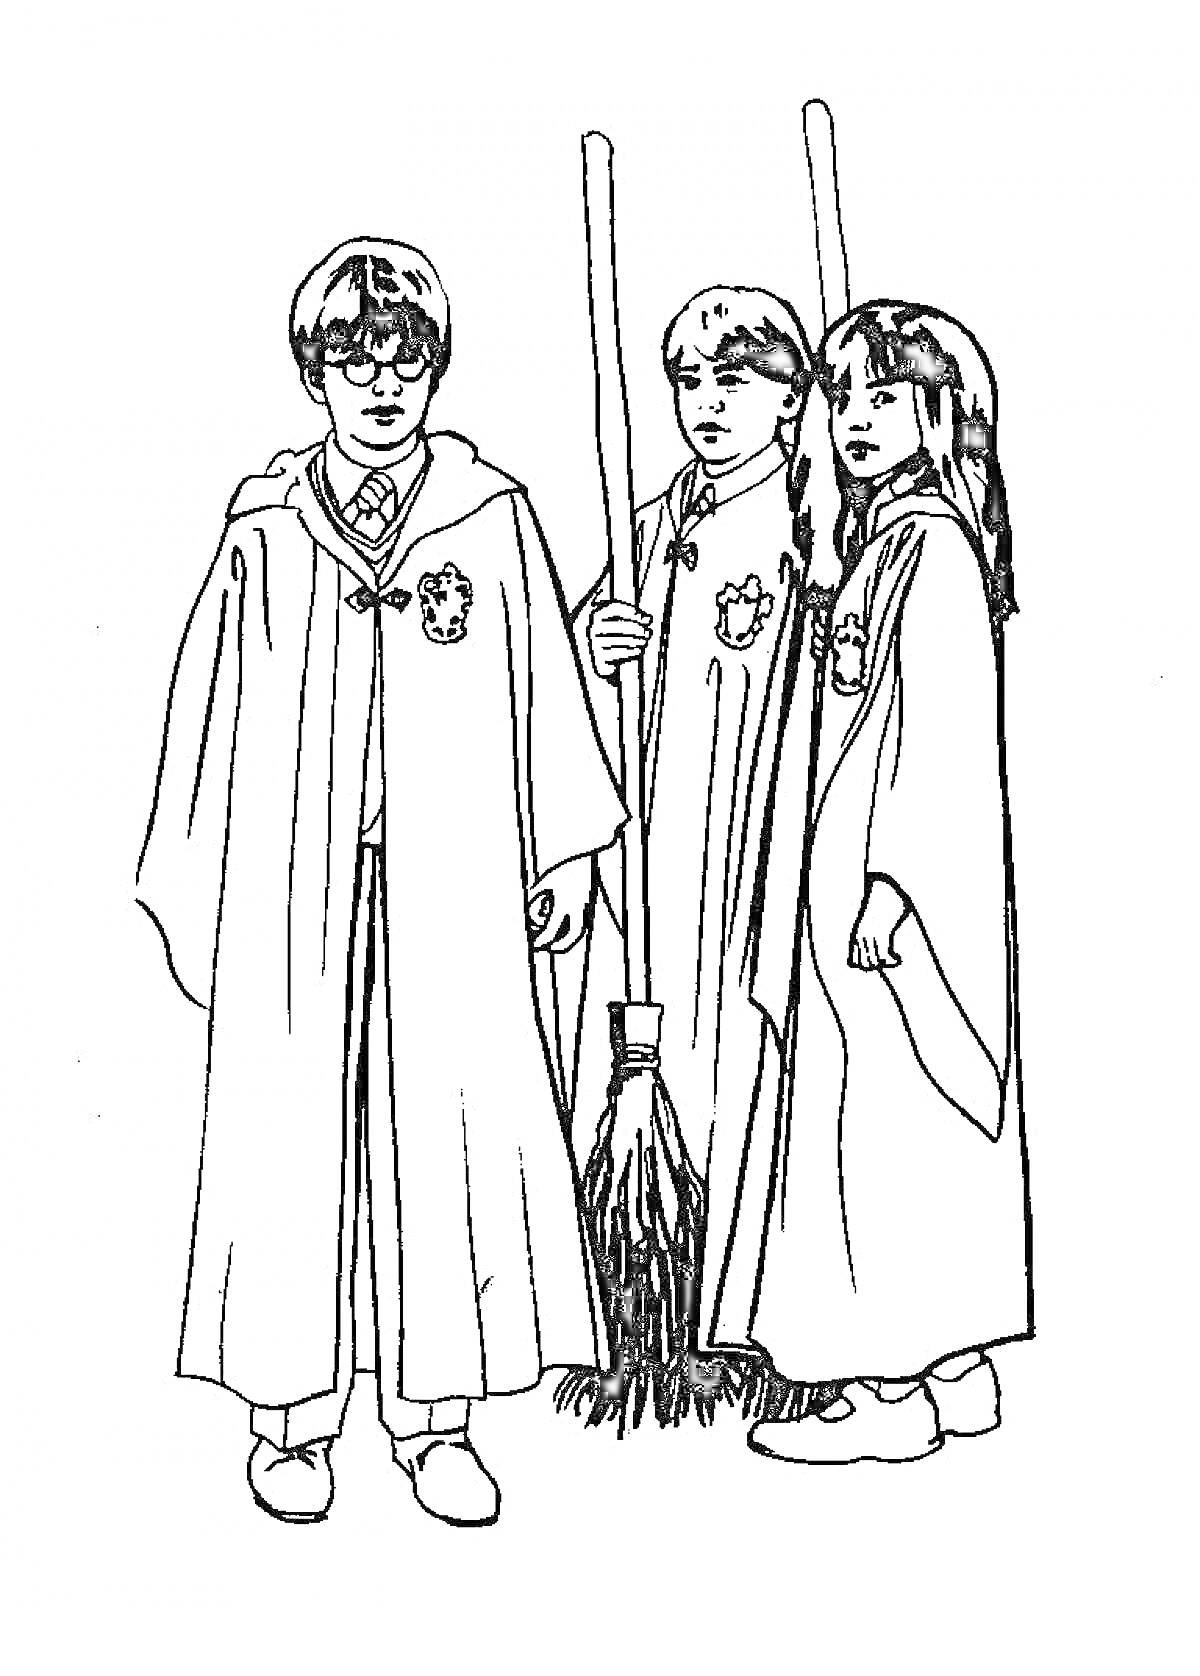 Три персонажа, одетые в мантии, стоят рядом с метлами